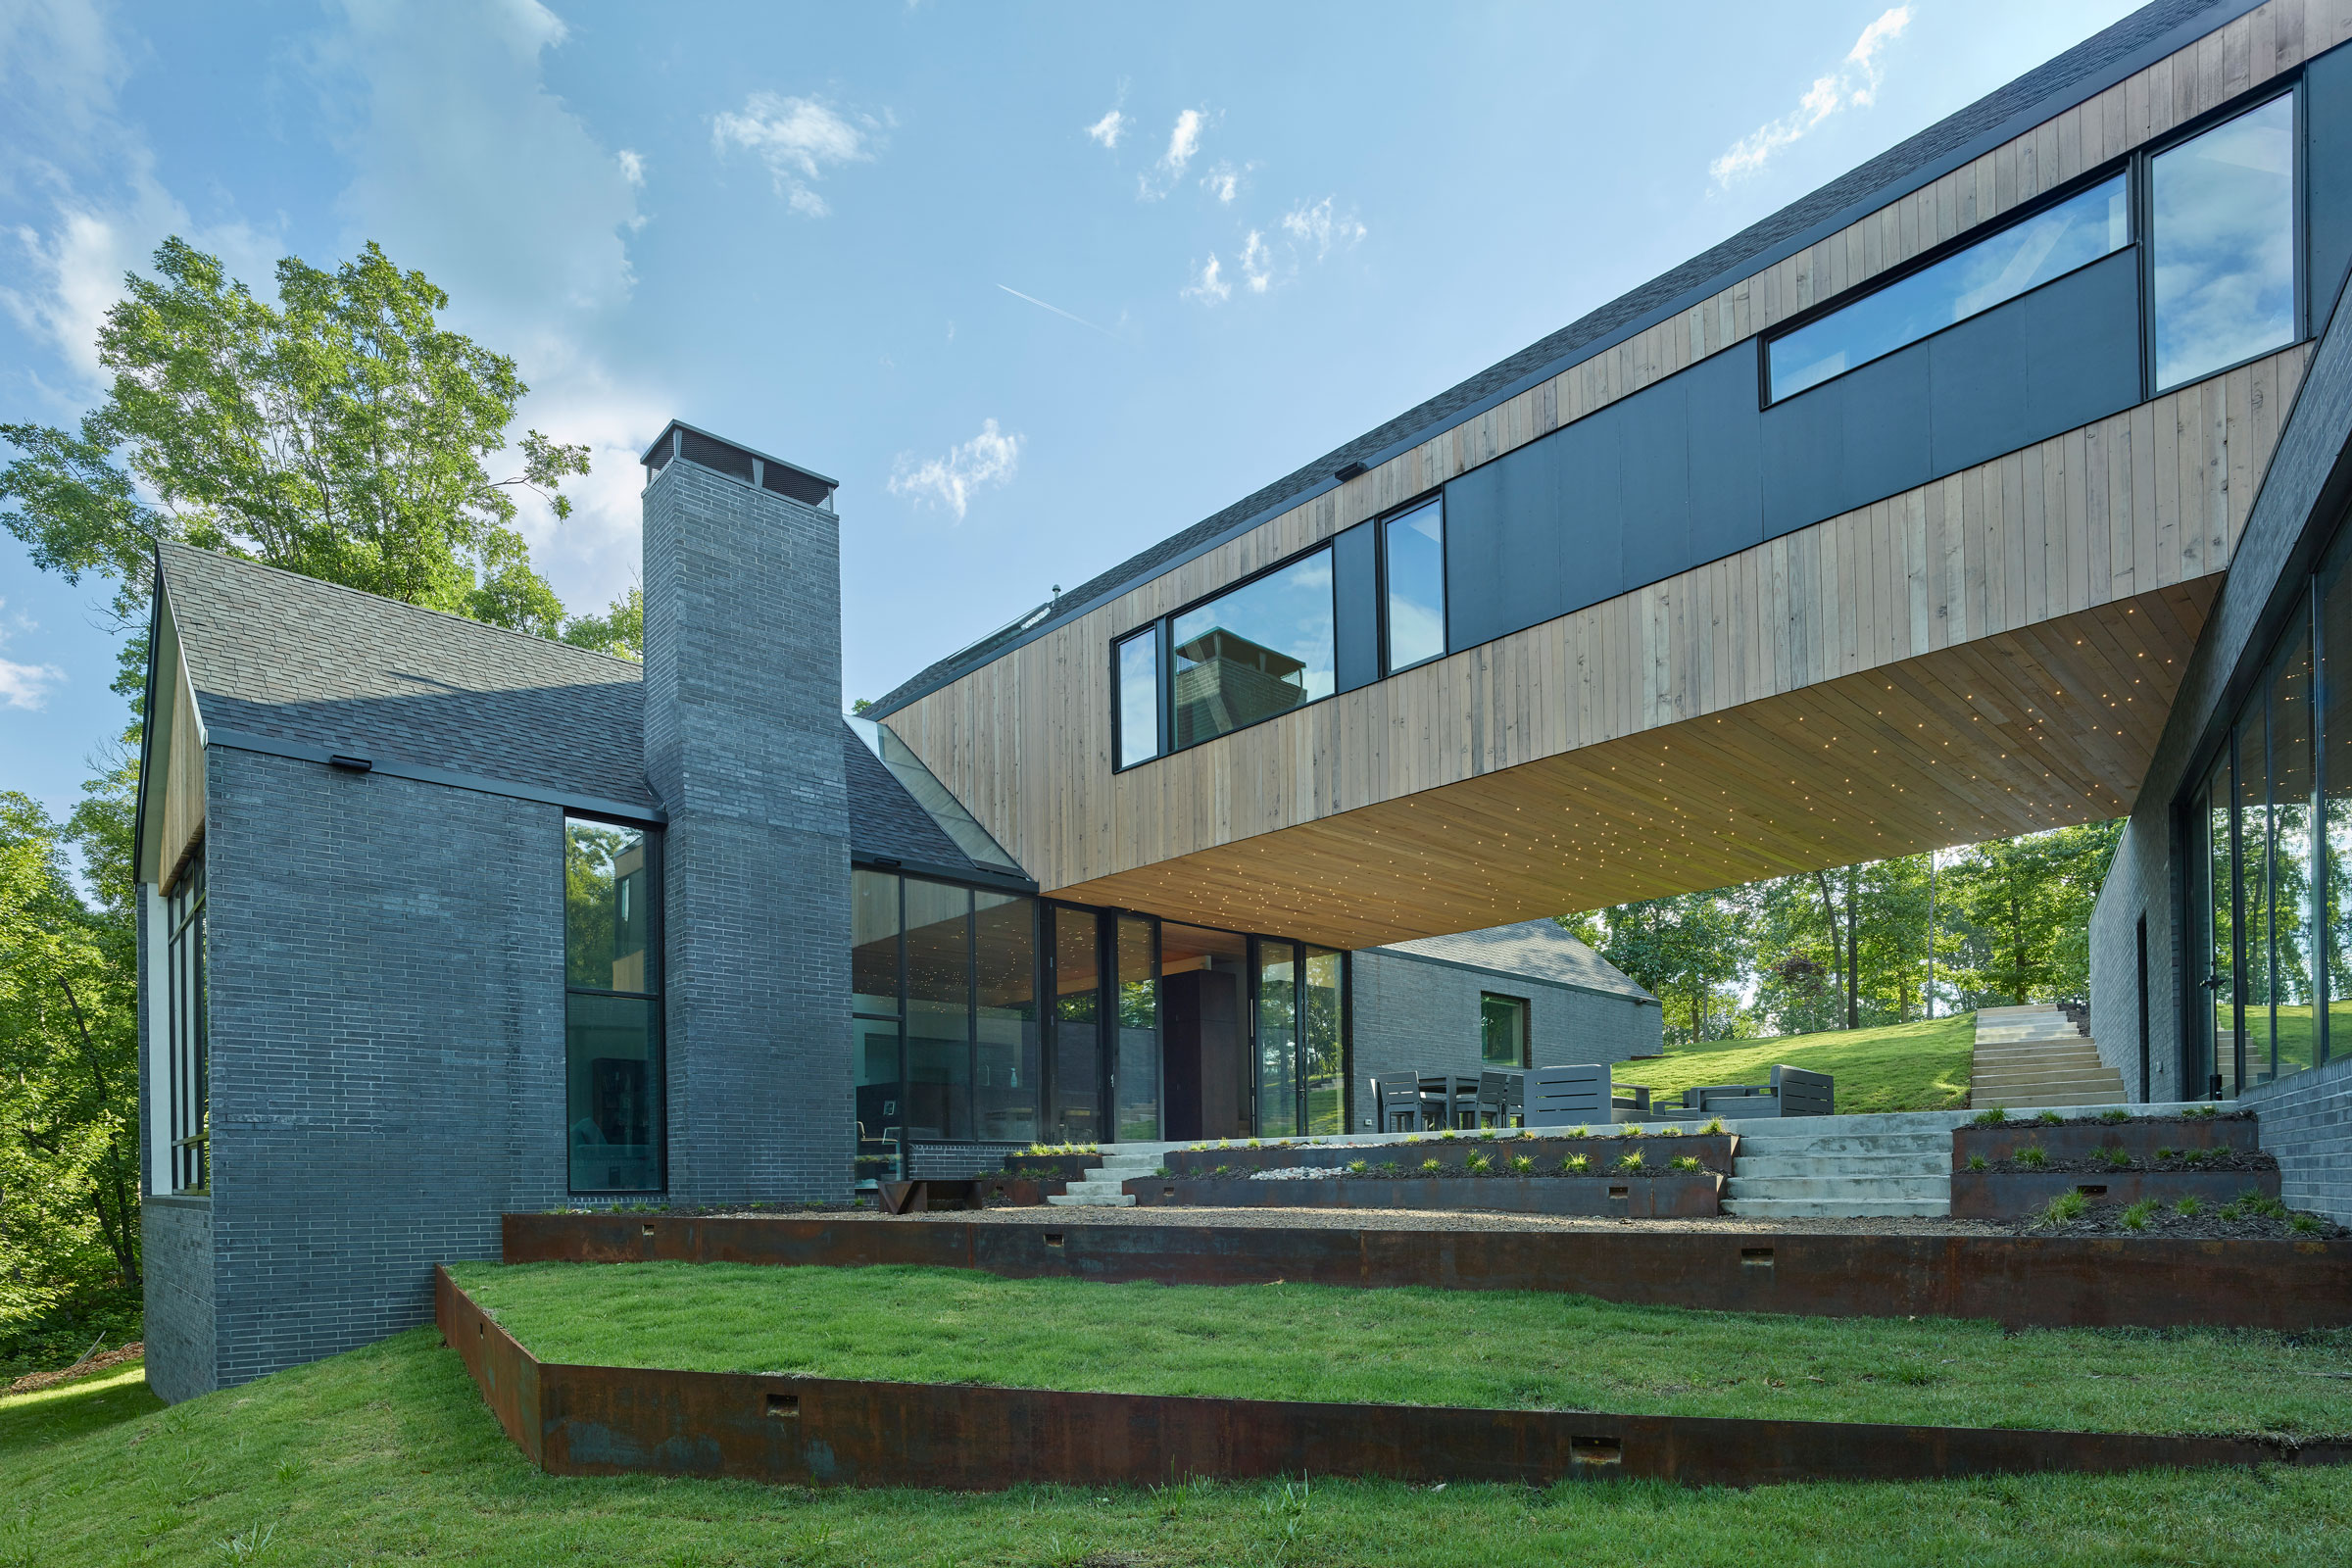 sustainable home design using brick photo by tim hursley